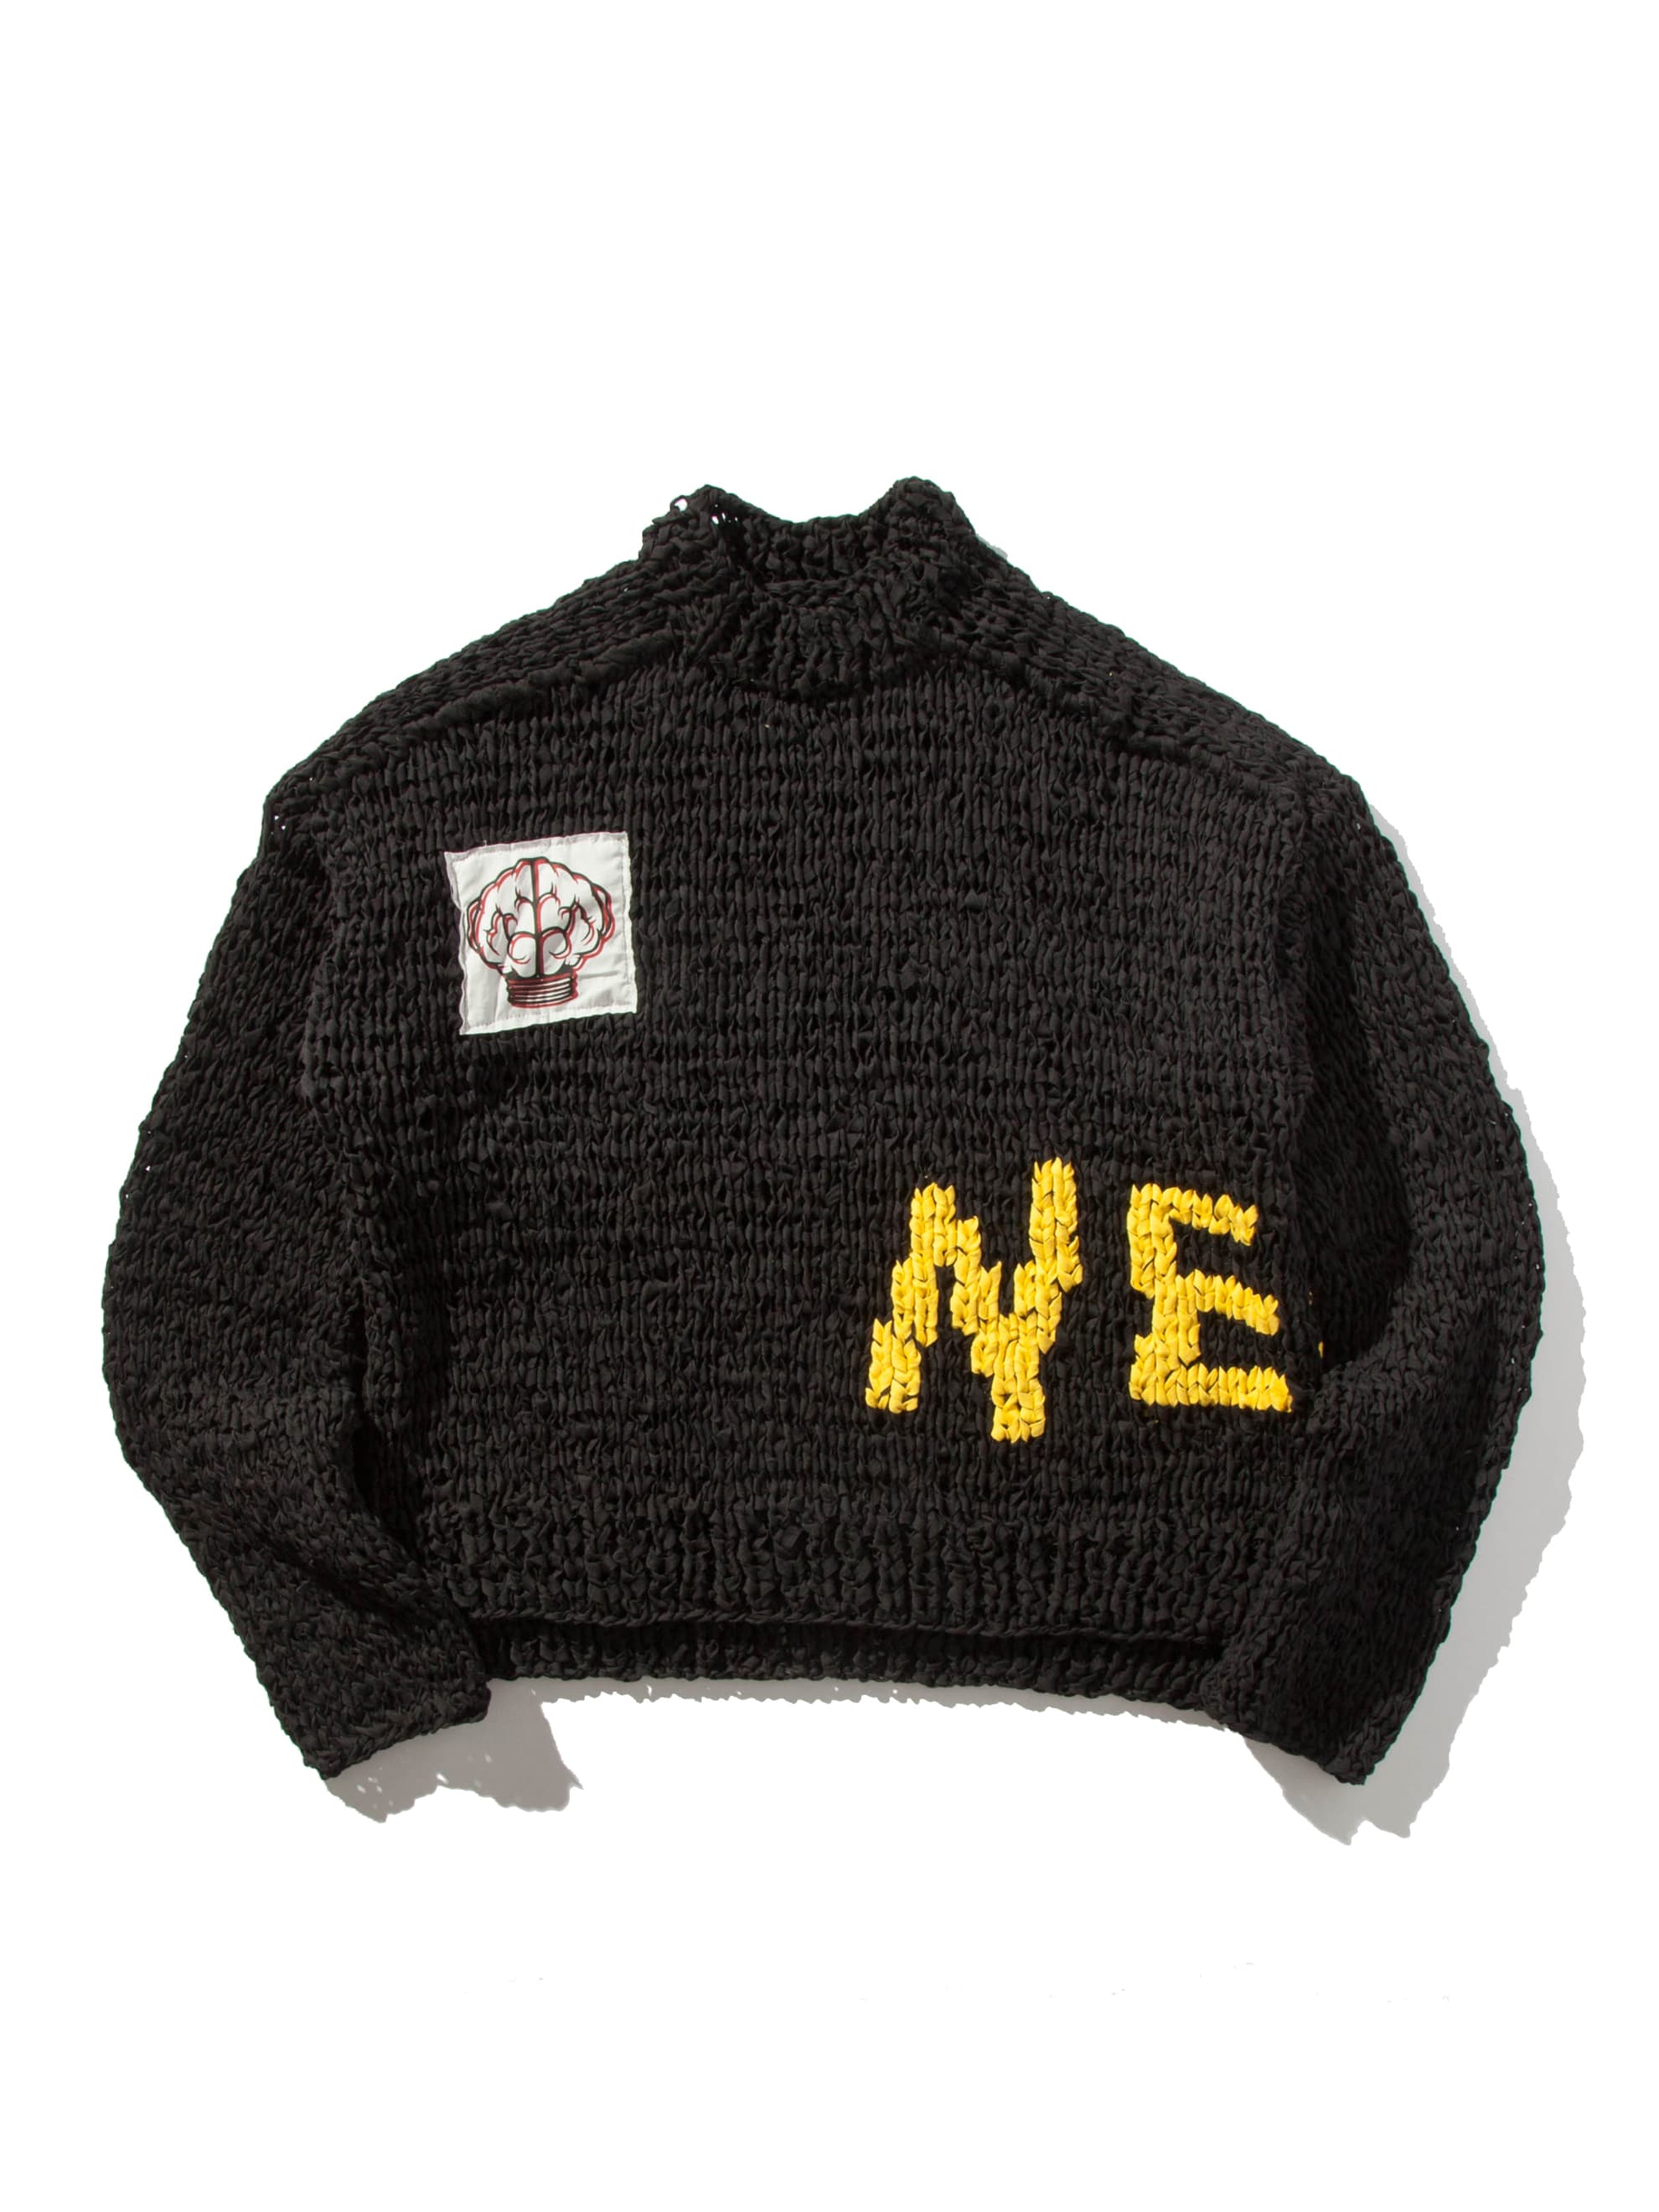 Union x Ambush NERD sweater